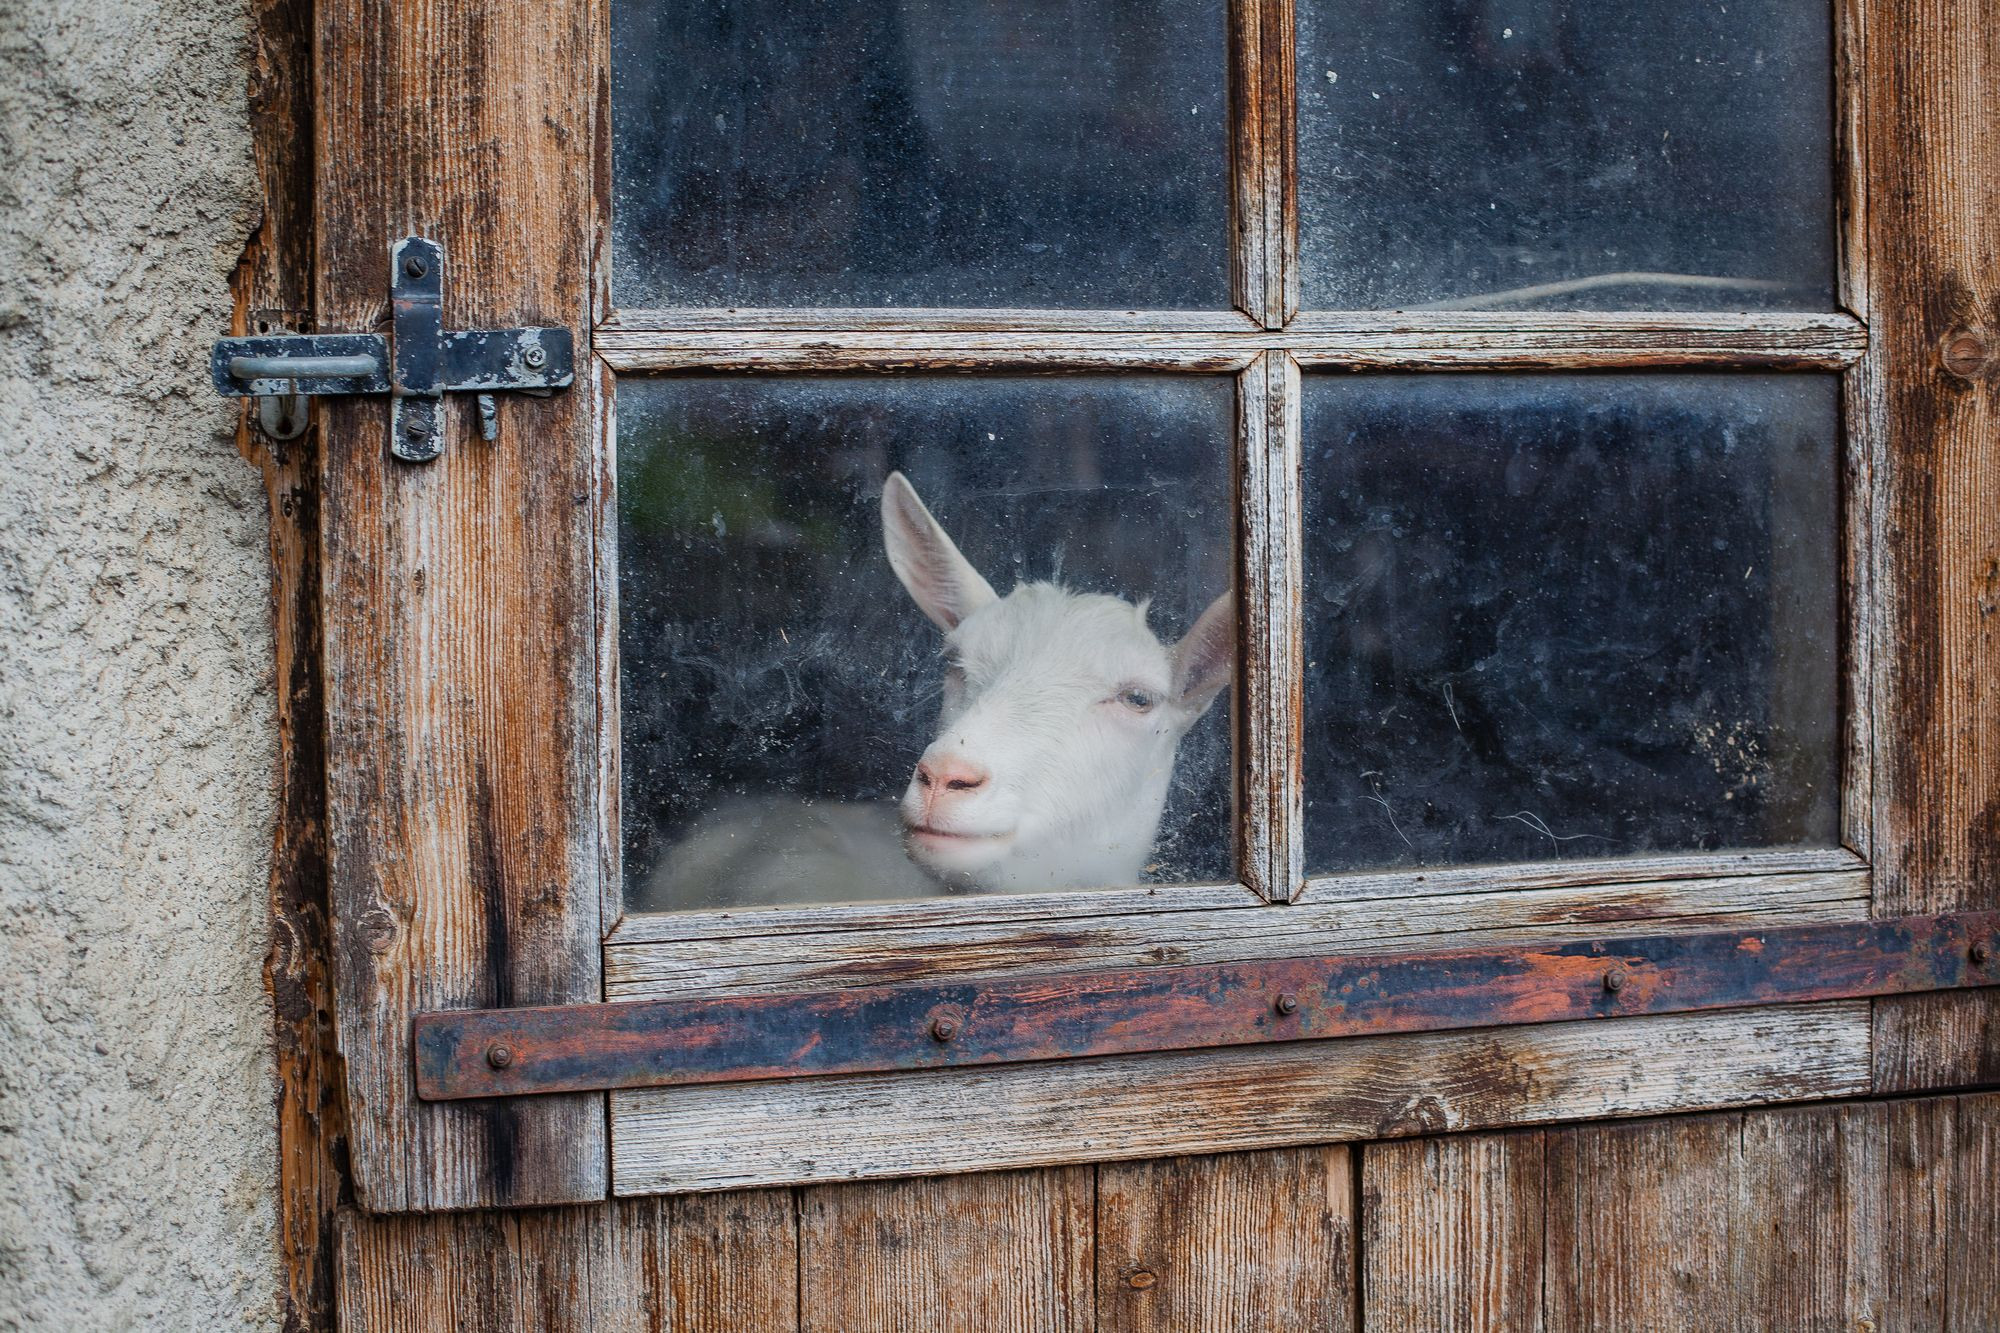 La chèvre qui nous regarde par la fenêtre